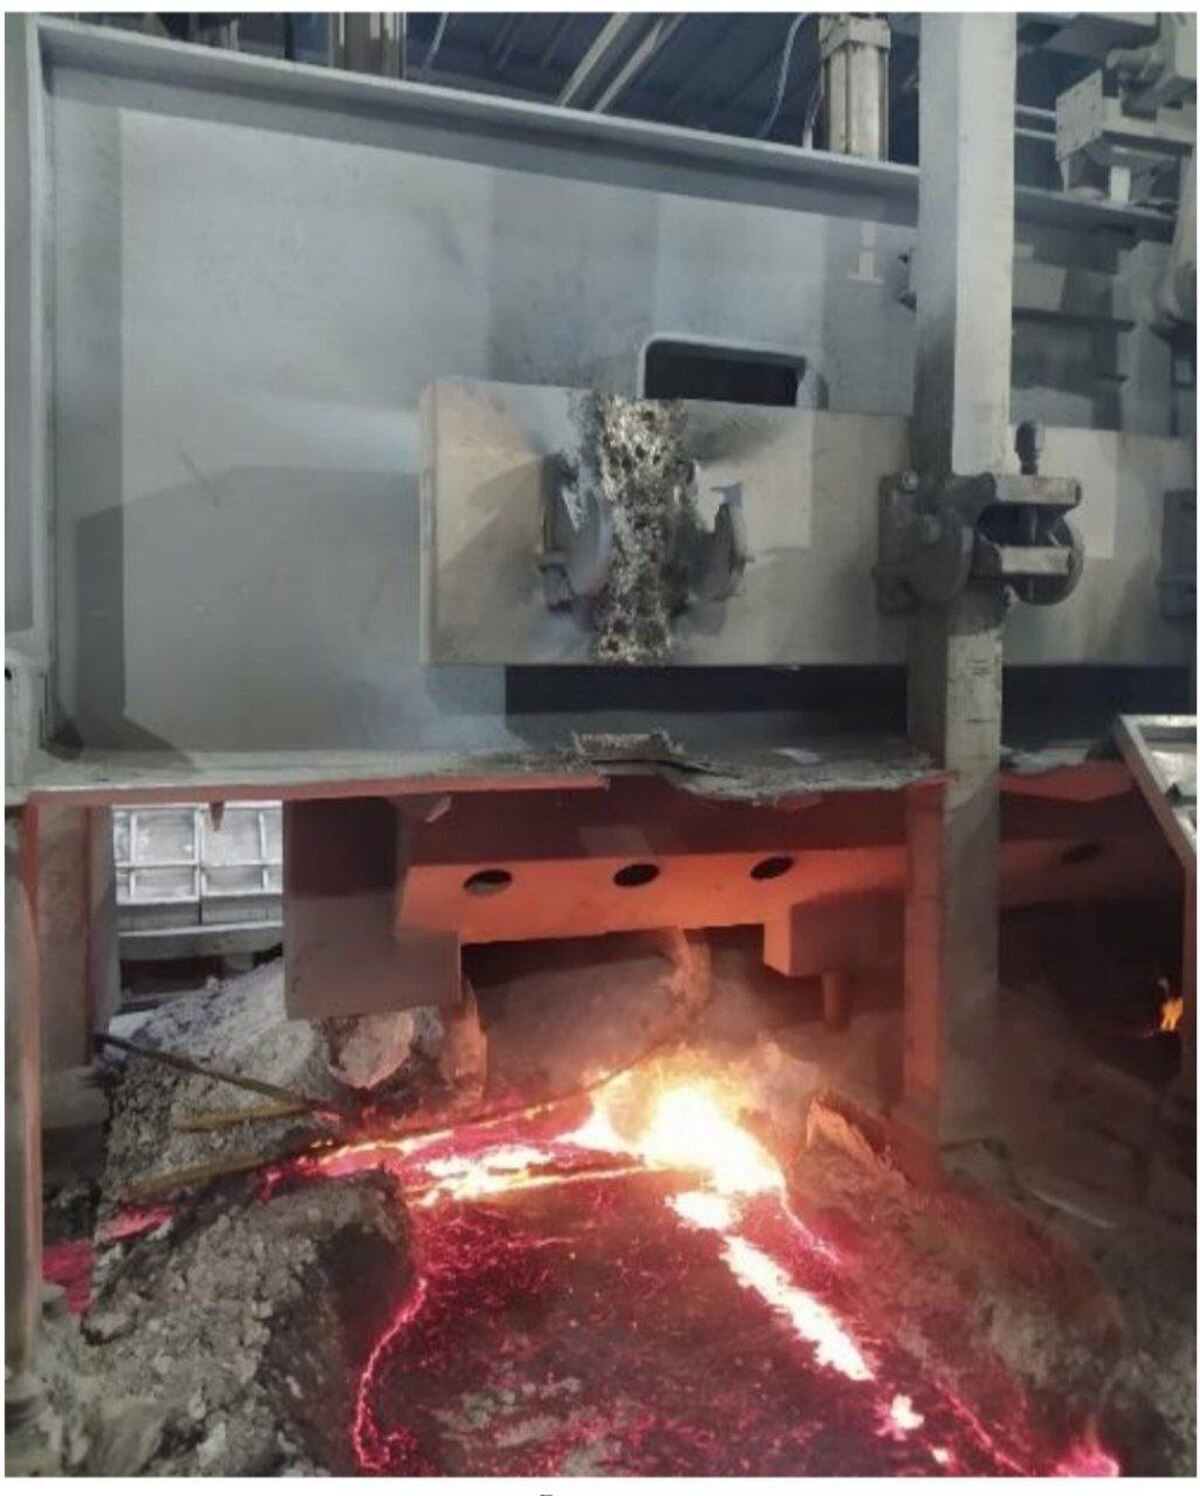 تعمیر جوشکاری آلومینیوم در شرایط میدان مغناطیسی در شرکت آلومینای ایران انجام شد